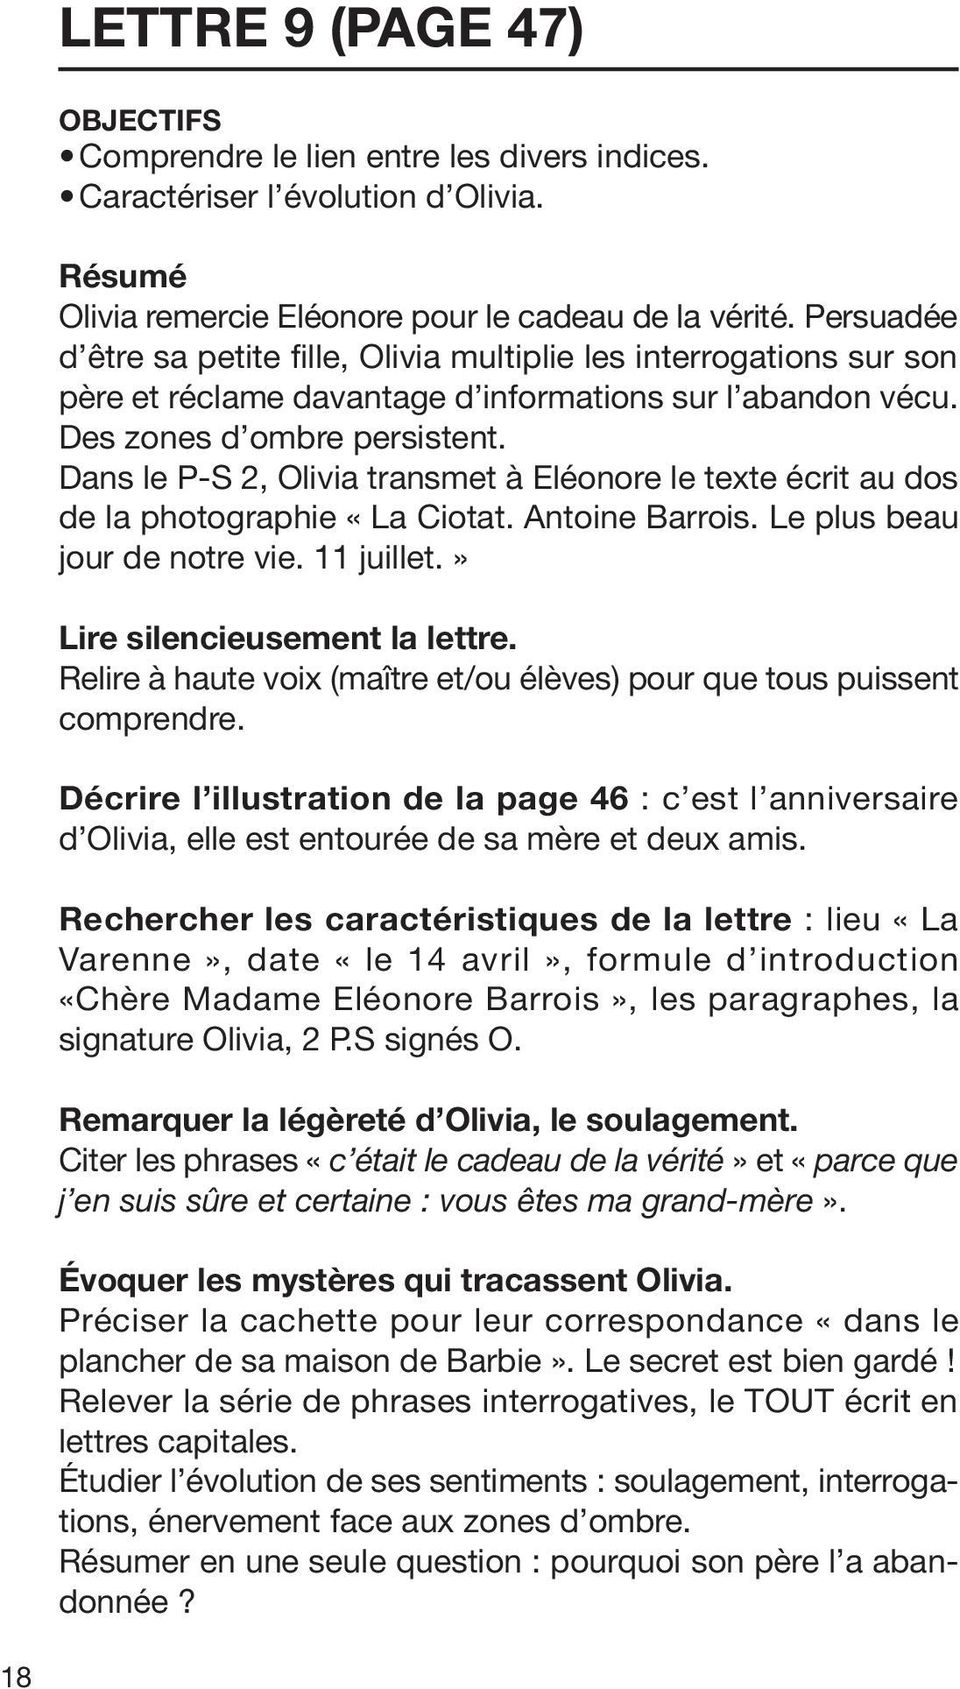 Dans le P-S 2, Olivia transmet à Eléonore le texte écrit au dos de la photographie «La Ciotat. Antoine Barrois. Le plus beau jour de notre vie. 11 juillet.» Lire silencieusement la lettre.